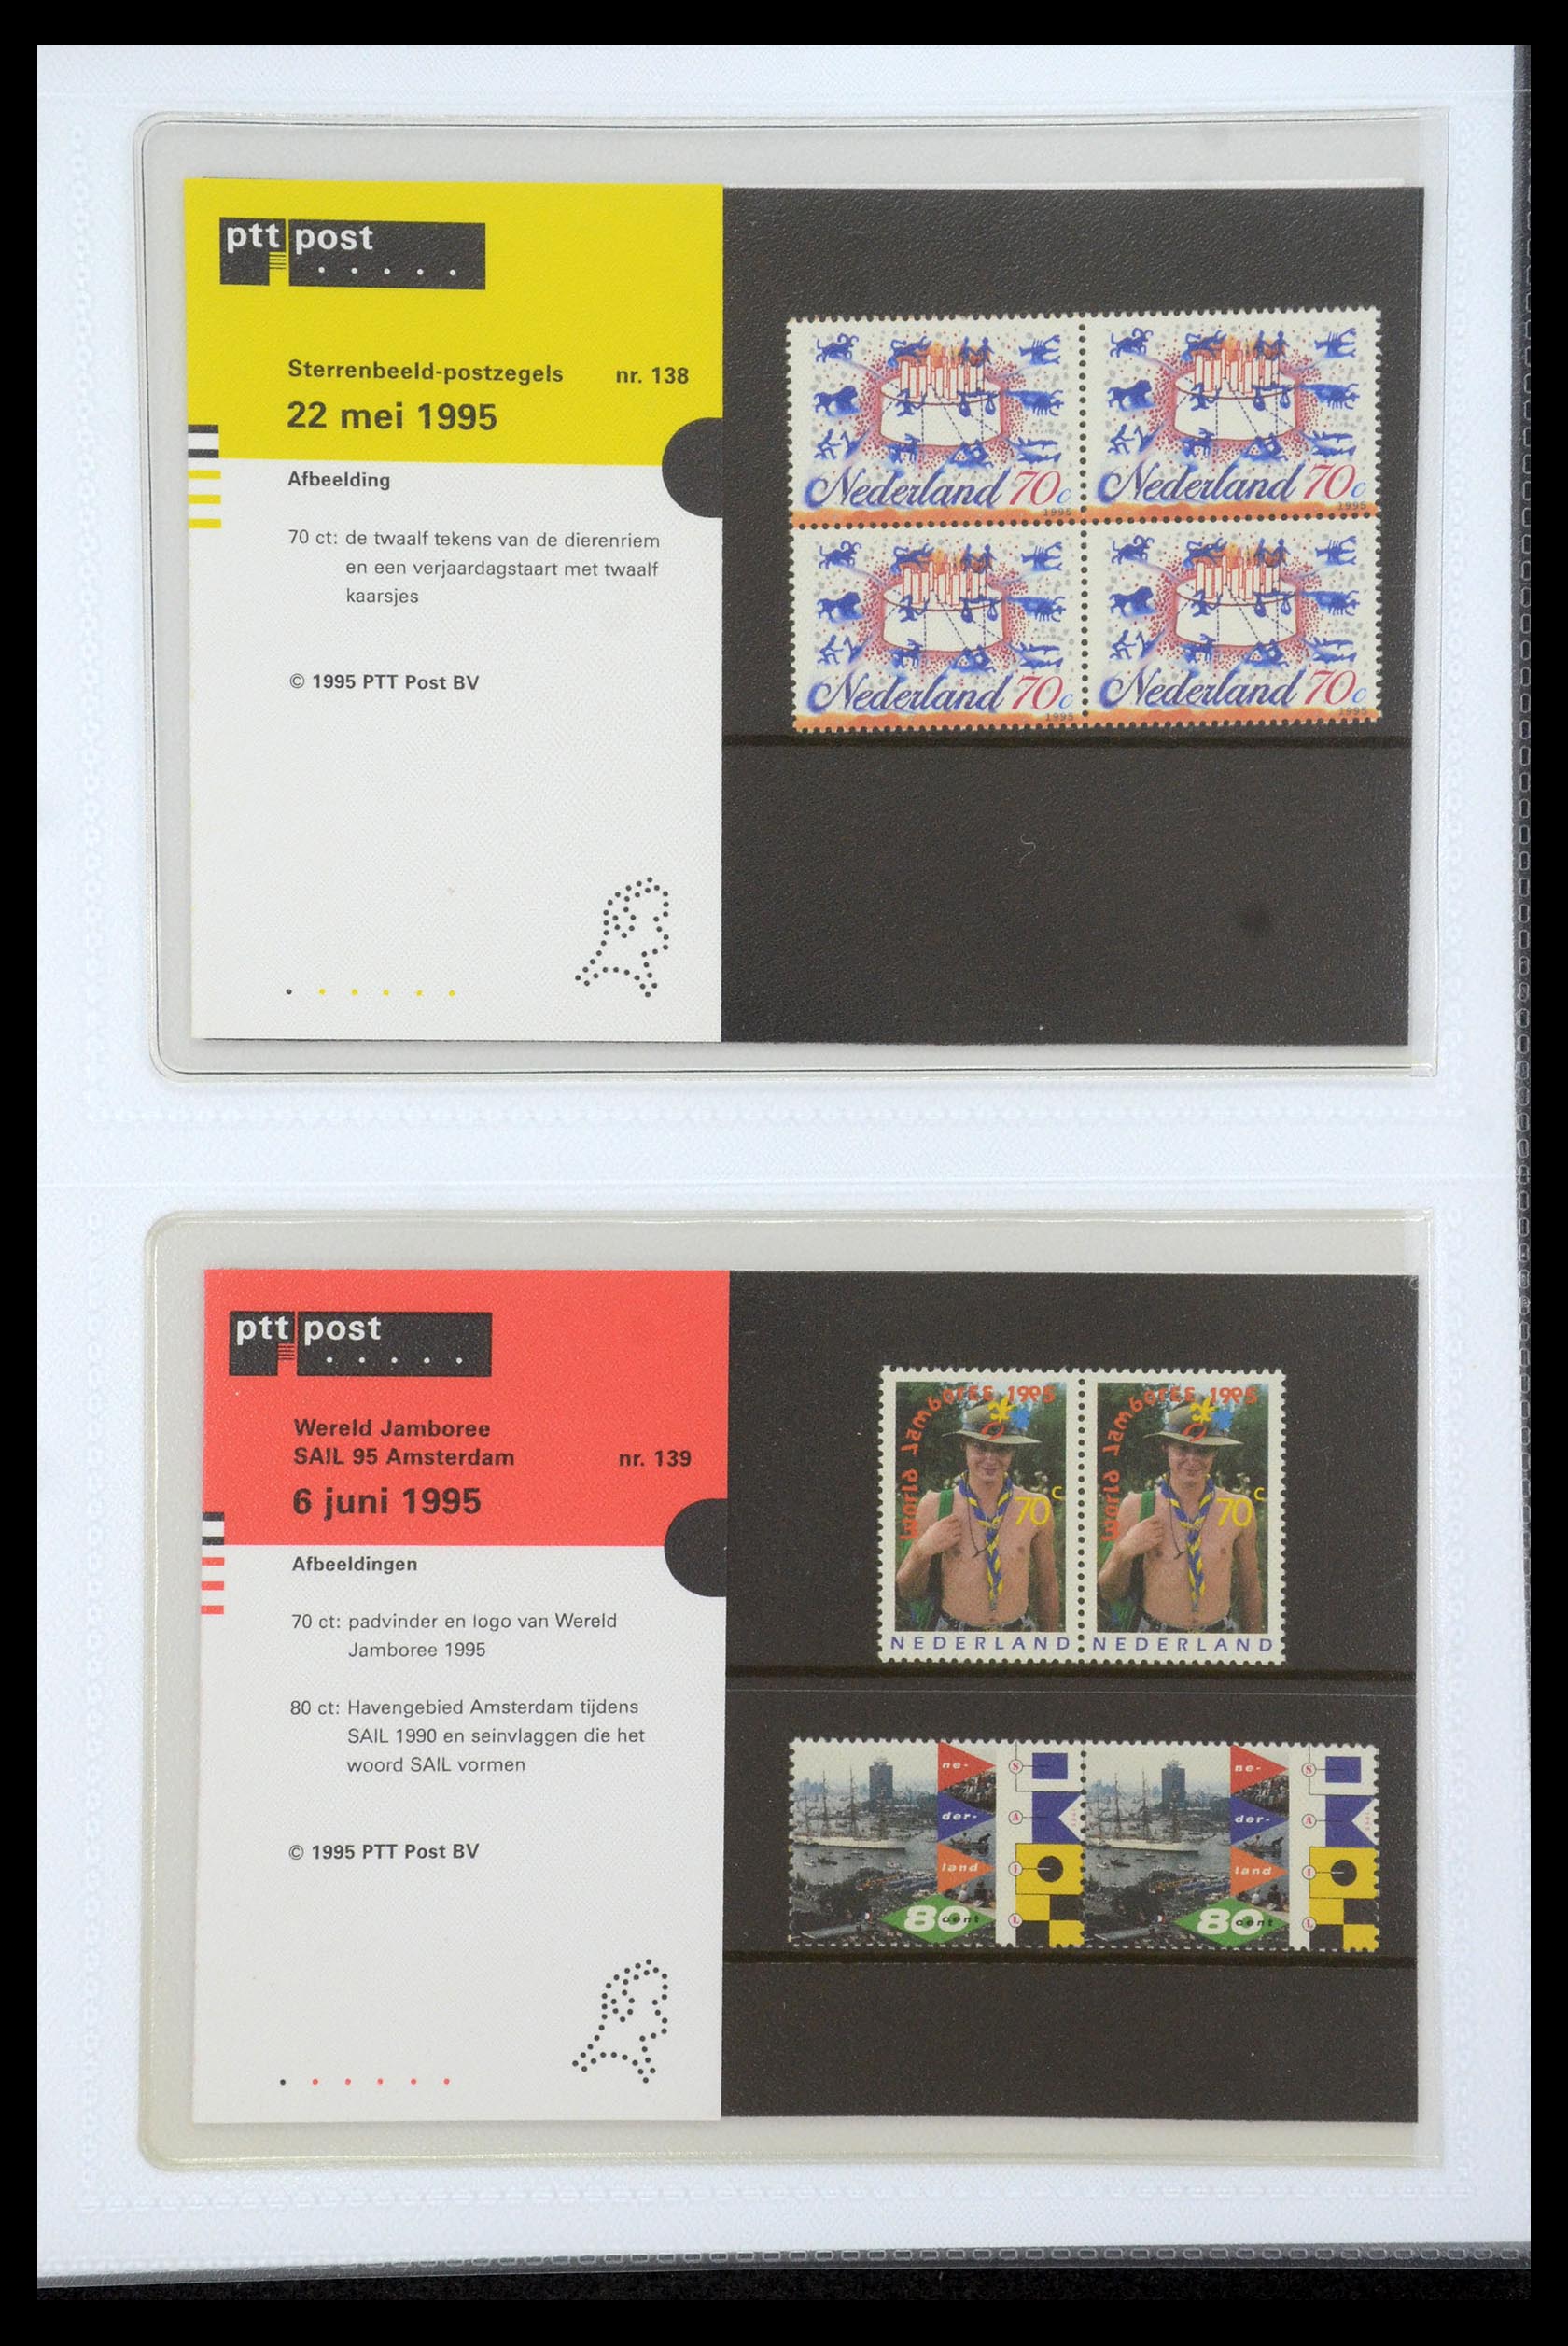 35947 072 - Stamp Collection 35947 Netherlands PTT presentation packs 1982-2019!